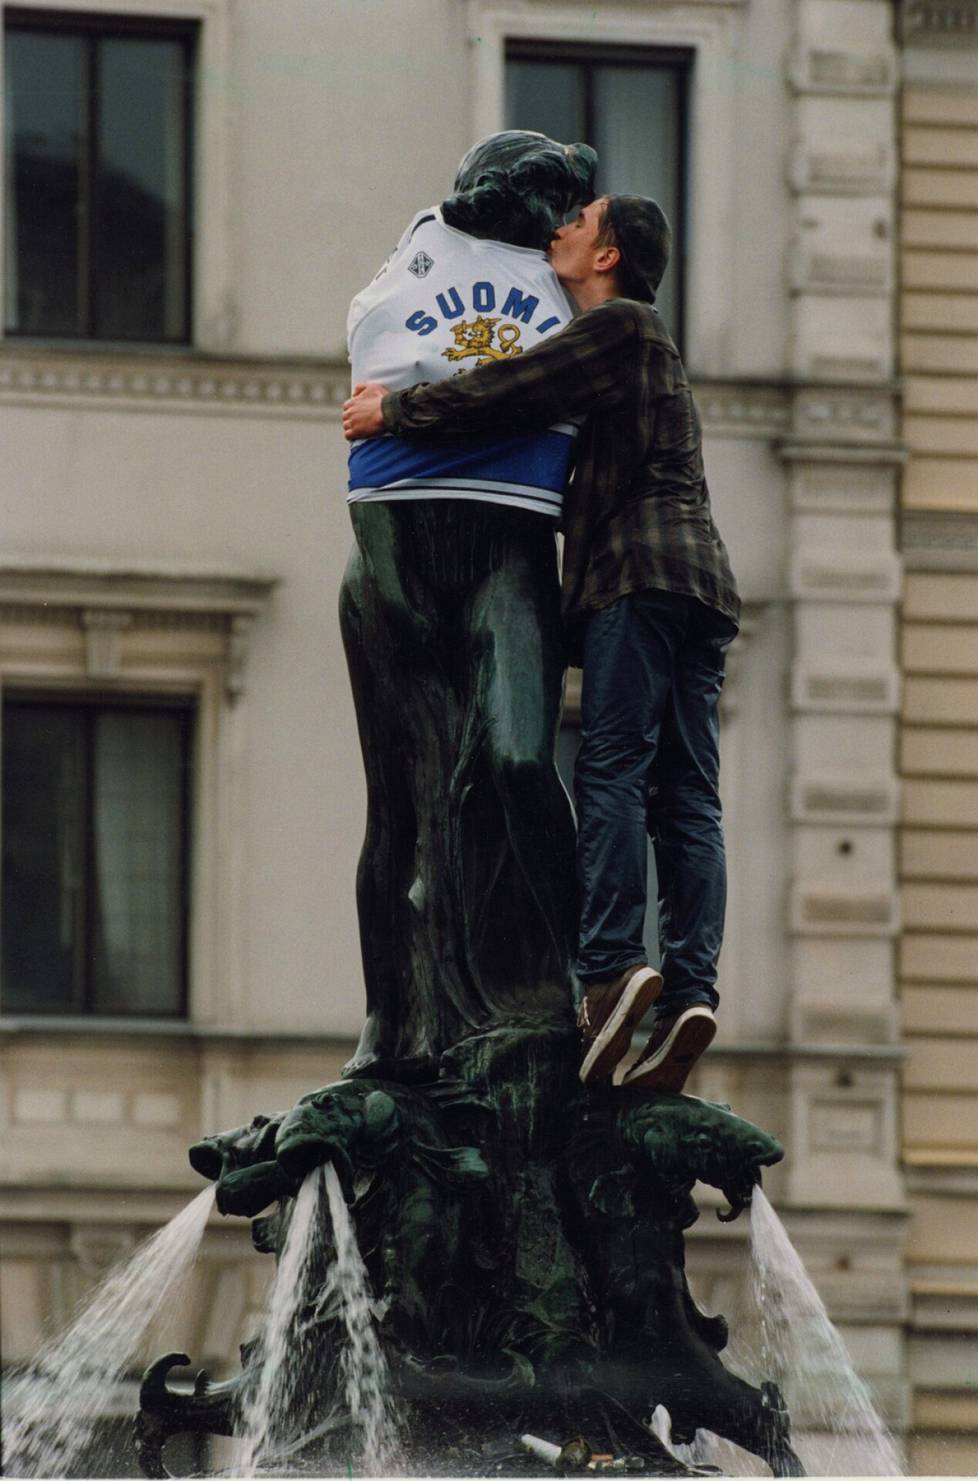 Suomen ensimmäisen jääkiekkokulta vuona 1995 loi perinteen, jossa urheilumenestystä juhlistettiin Mantan patsaan äärellä.